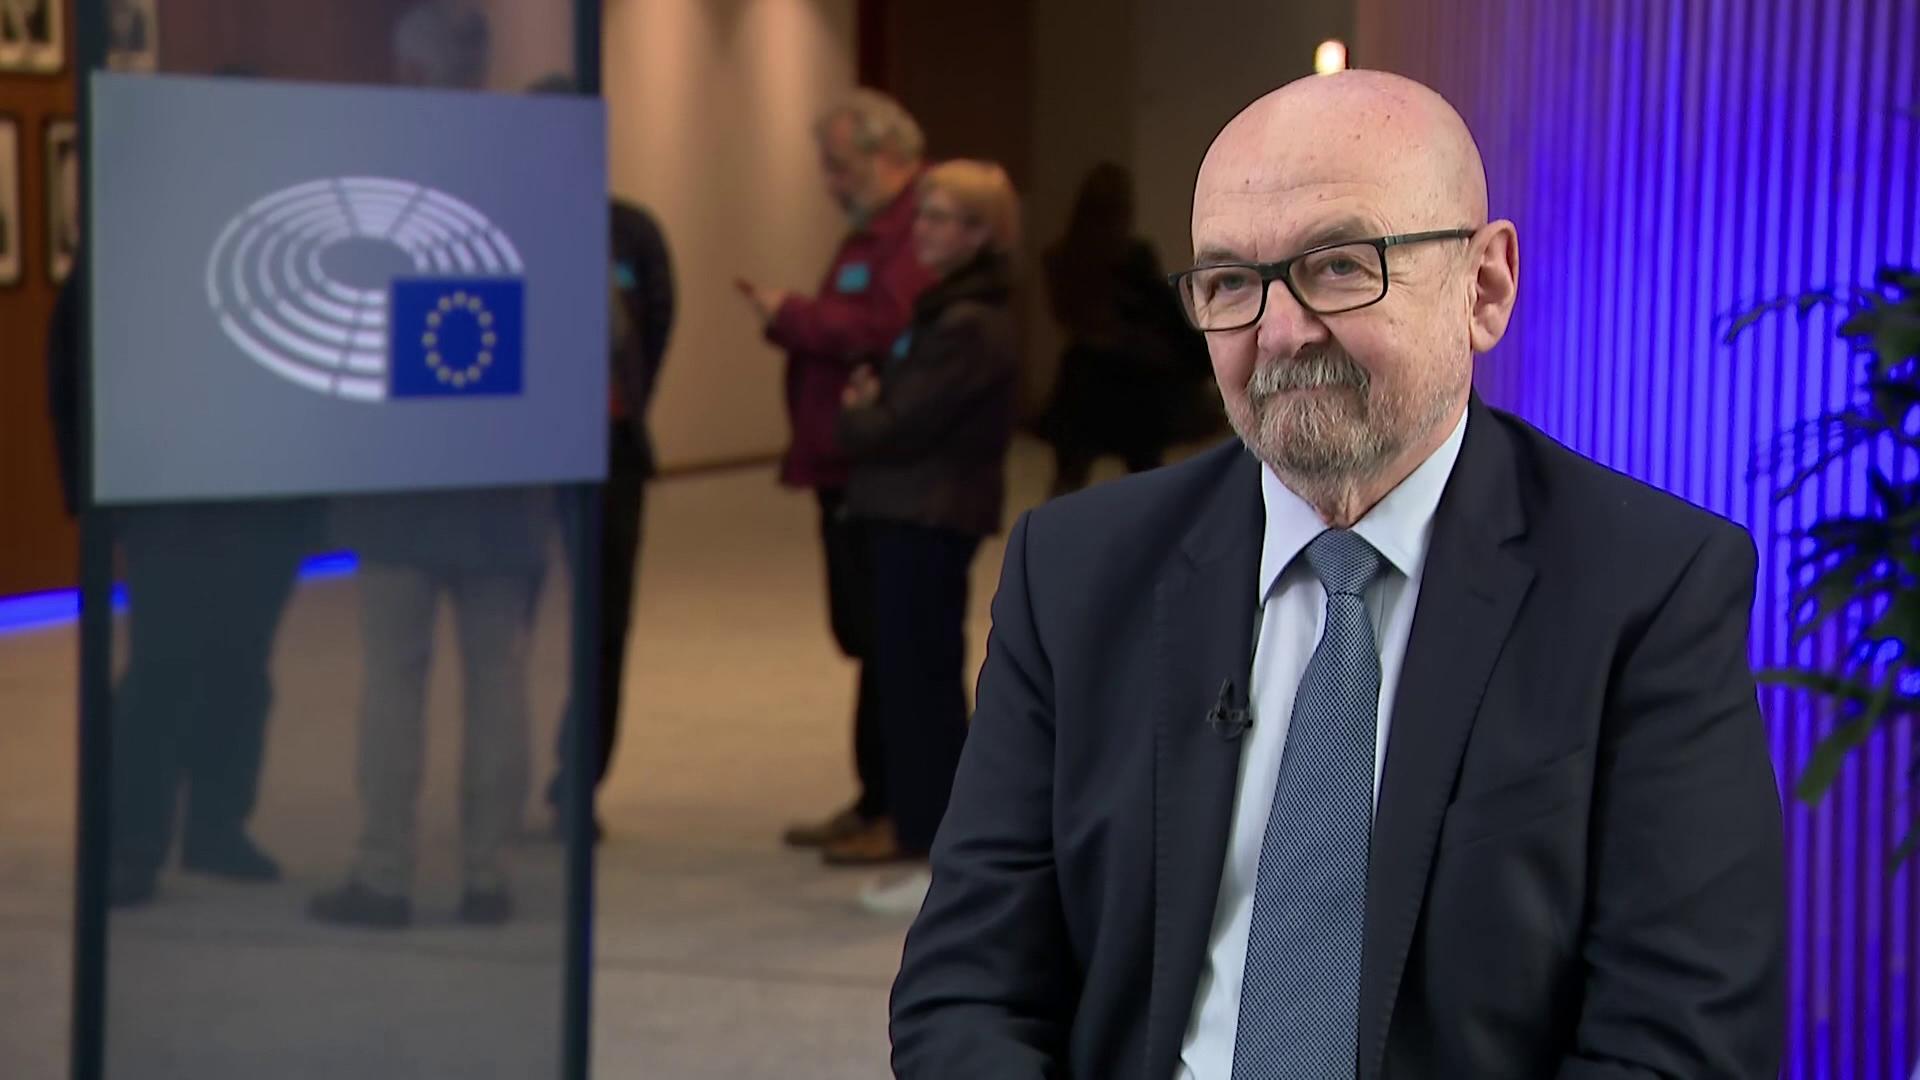 Európai híradó: exkluzív interjú Ryszard Legutko EP-képviselővel, aki beolvasott az Európai Parlamentnek